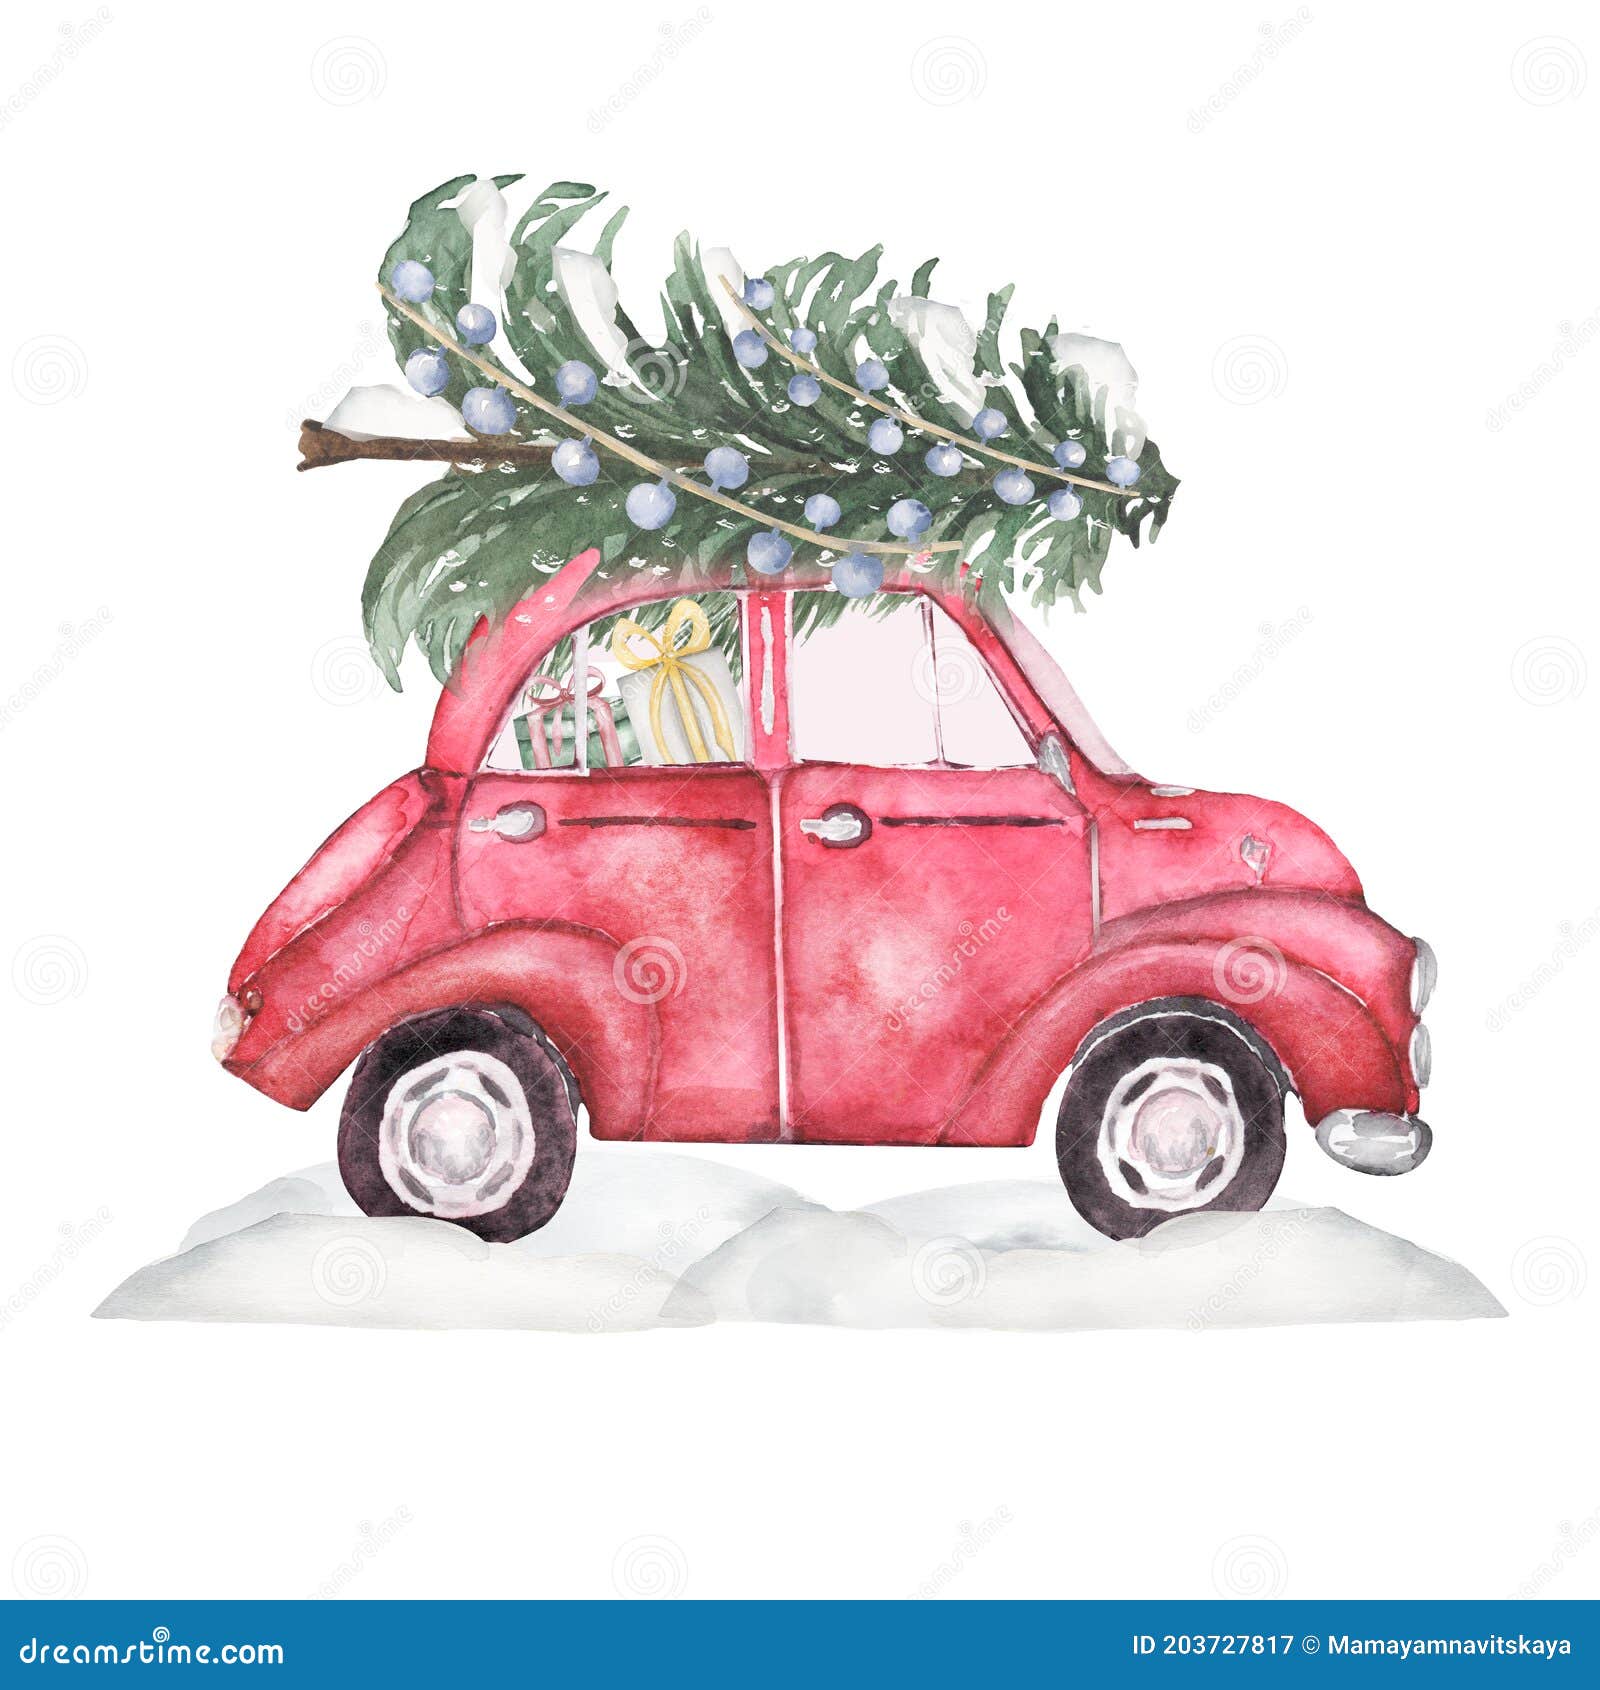 Weihnachtsbaum auf dem auto roter auto-weihnachtsbaum isoliert